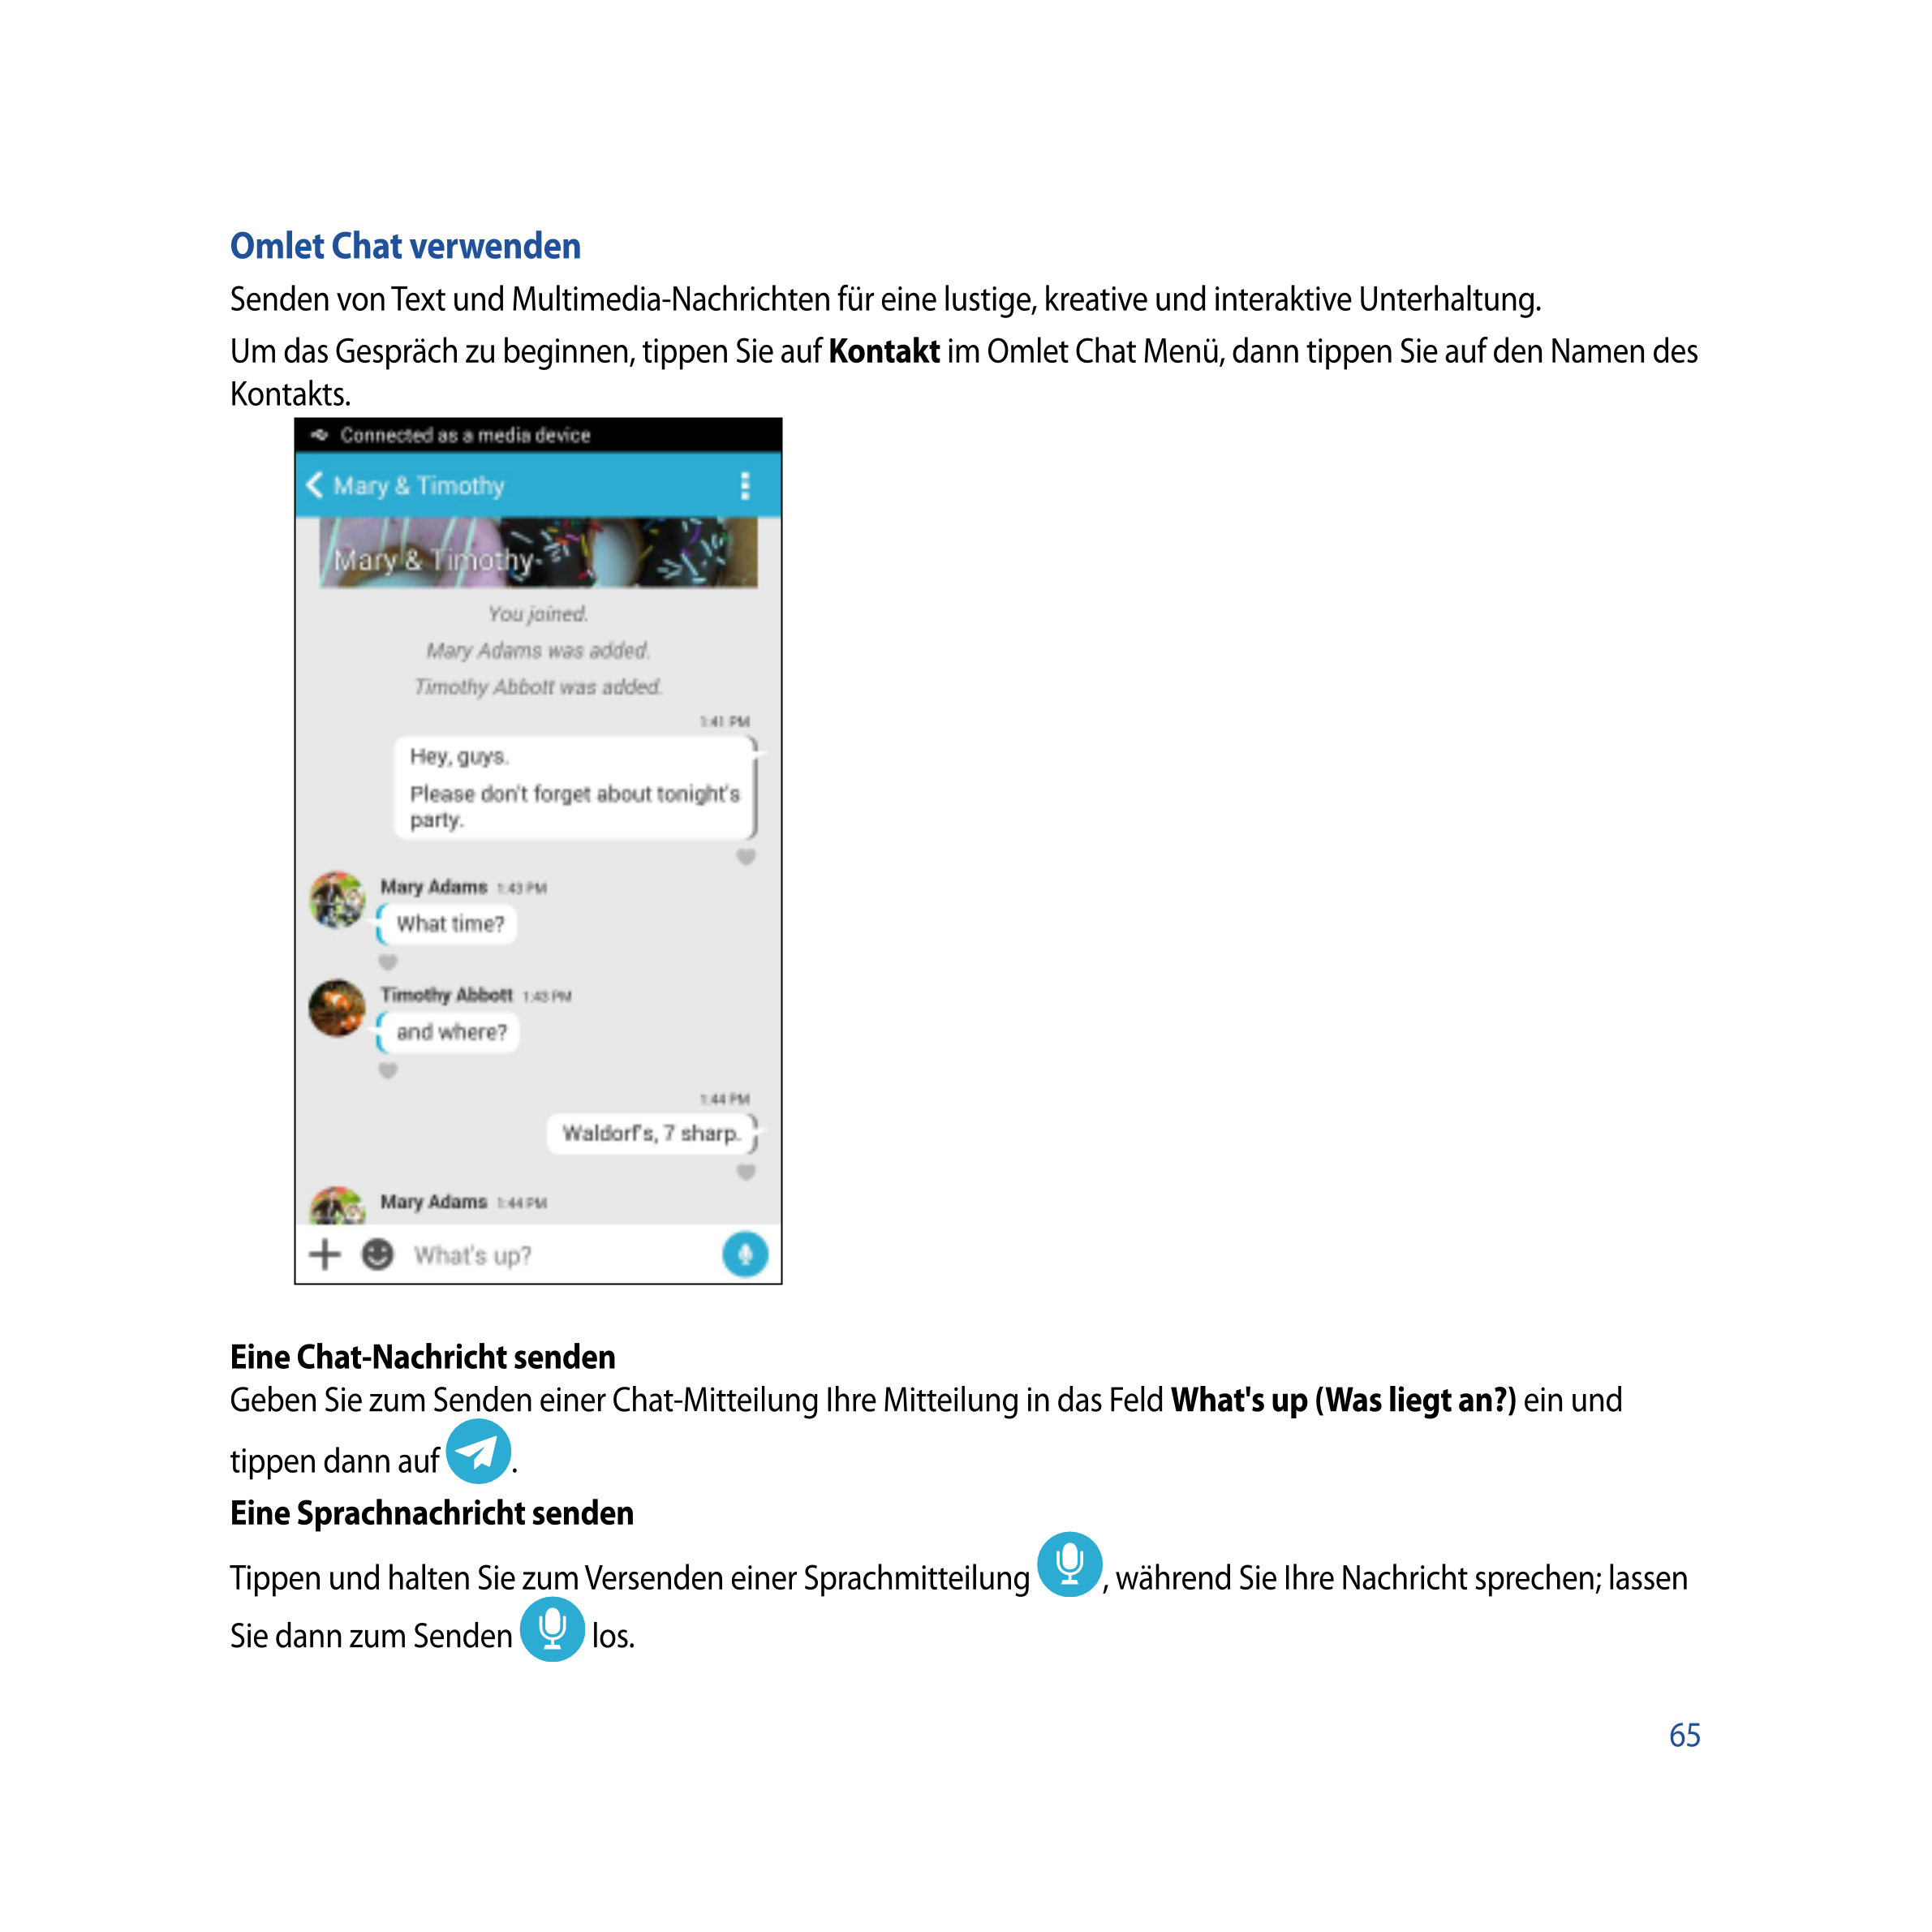 Omlet Chat verwenden
Senden von Text und Multimedia-Nachrichten für eine lustige, kreative und interaktive Unterhaltung.
Um das 